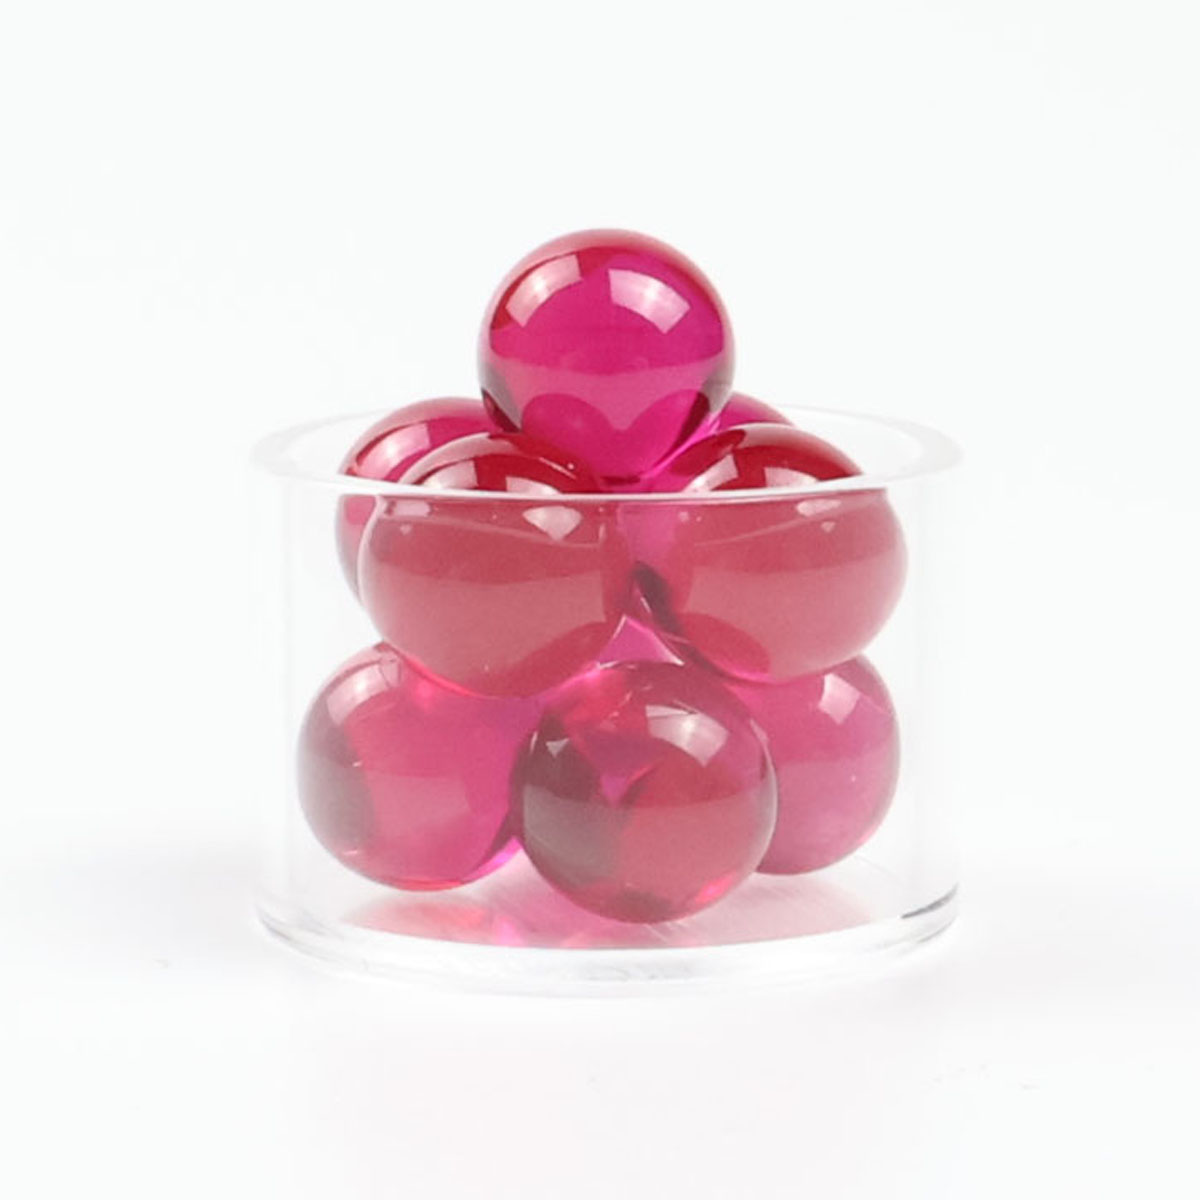 6mm ruby terp pearls